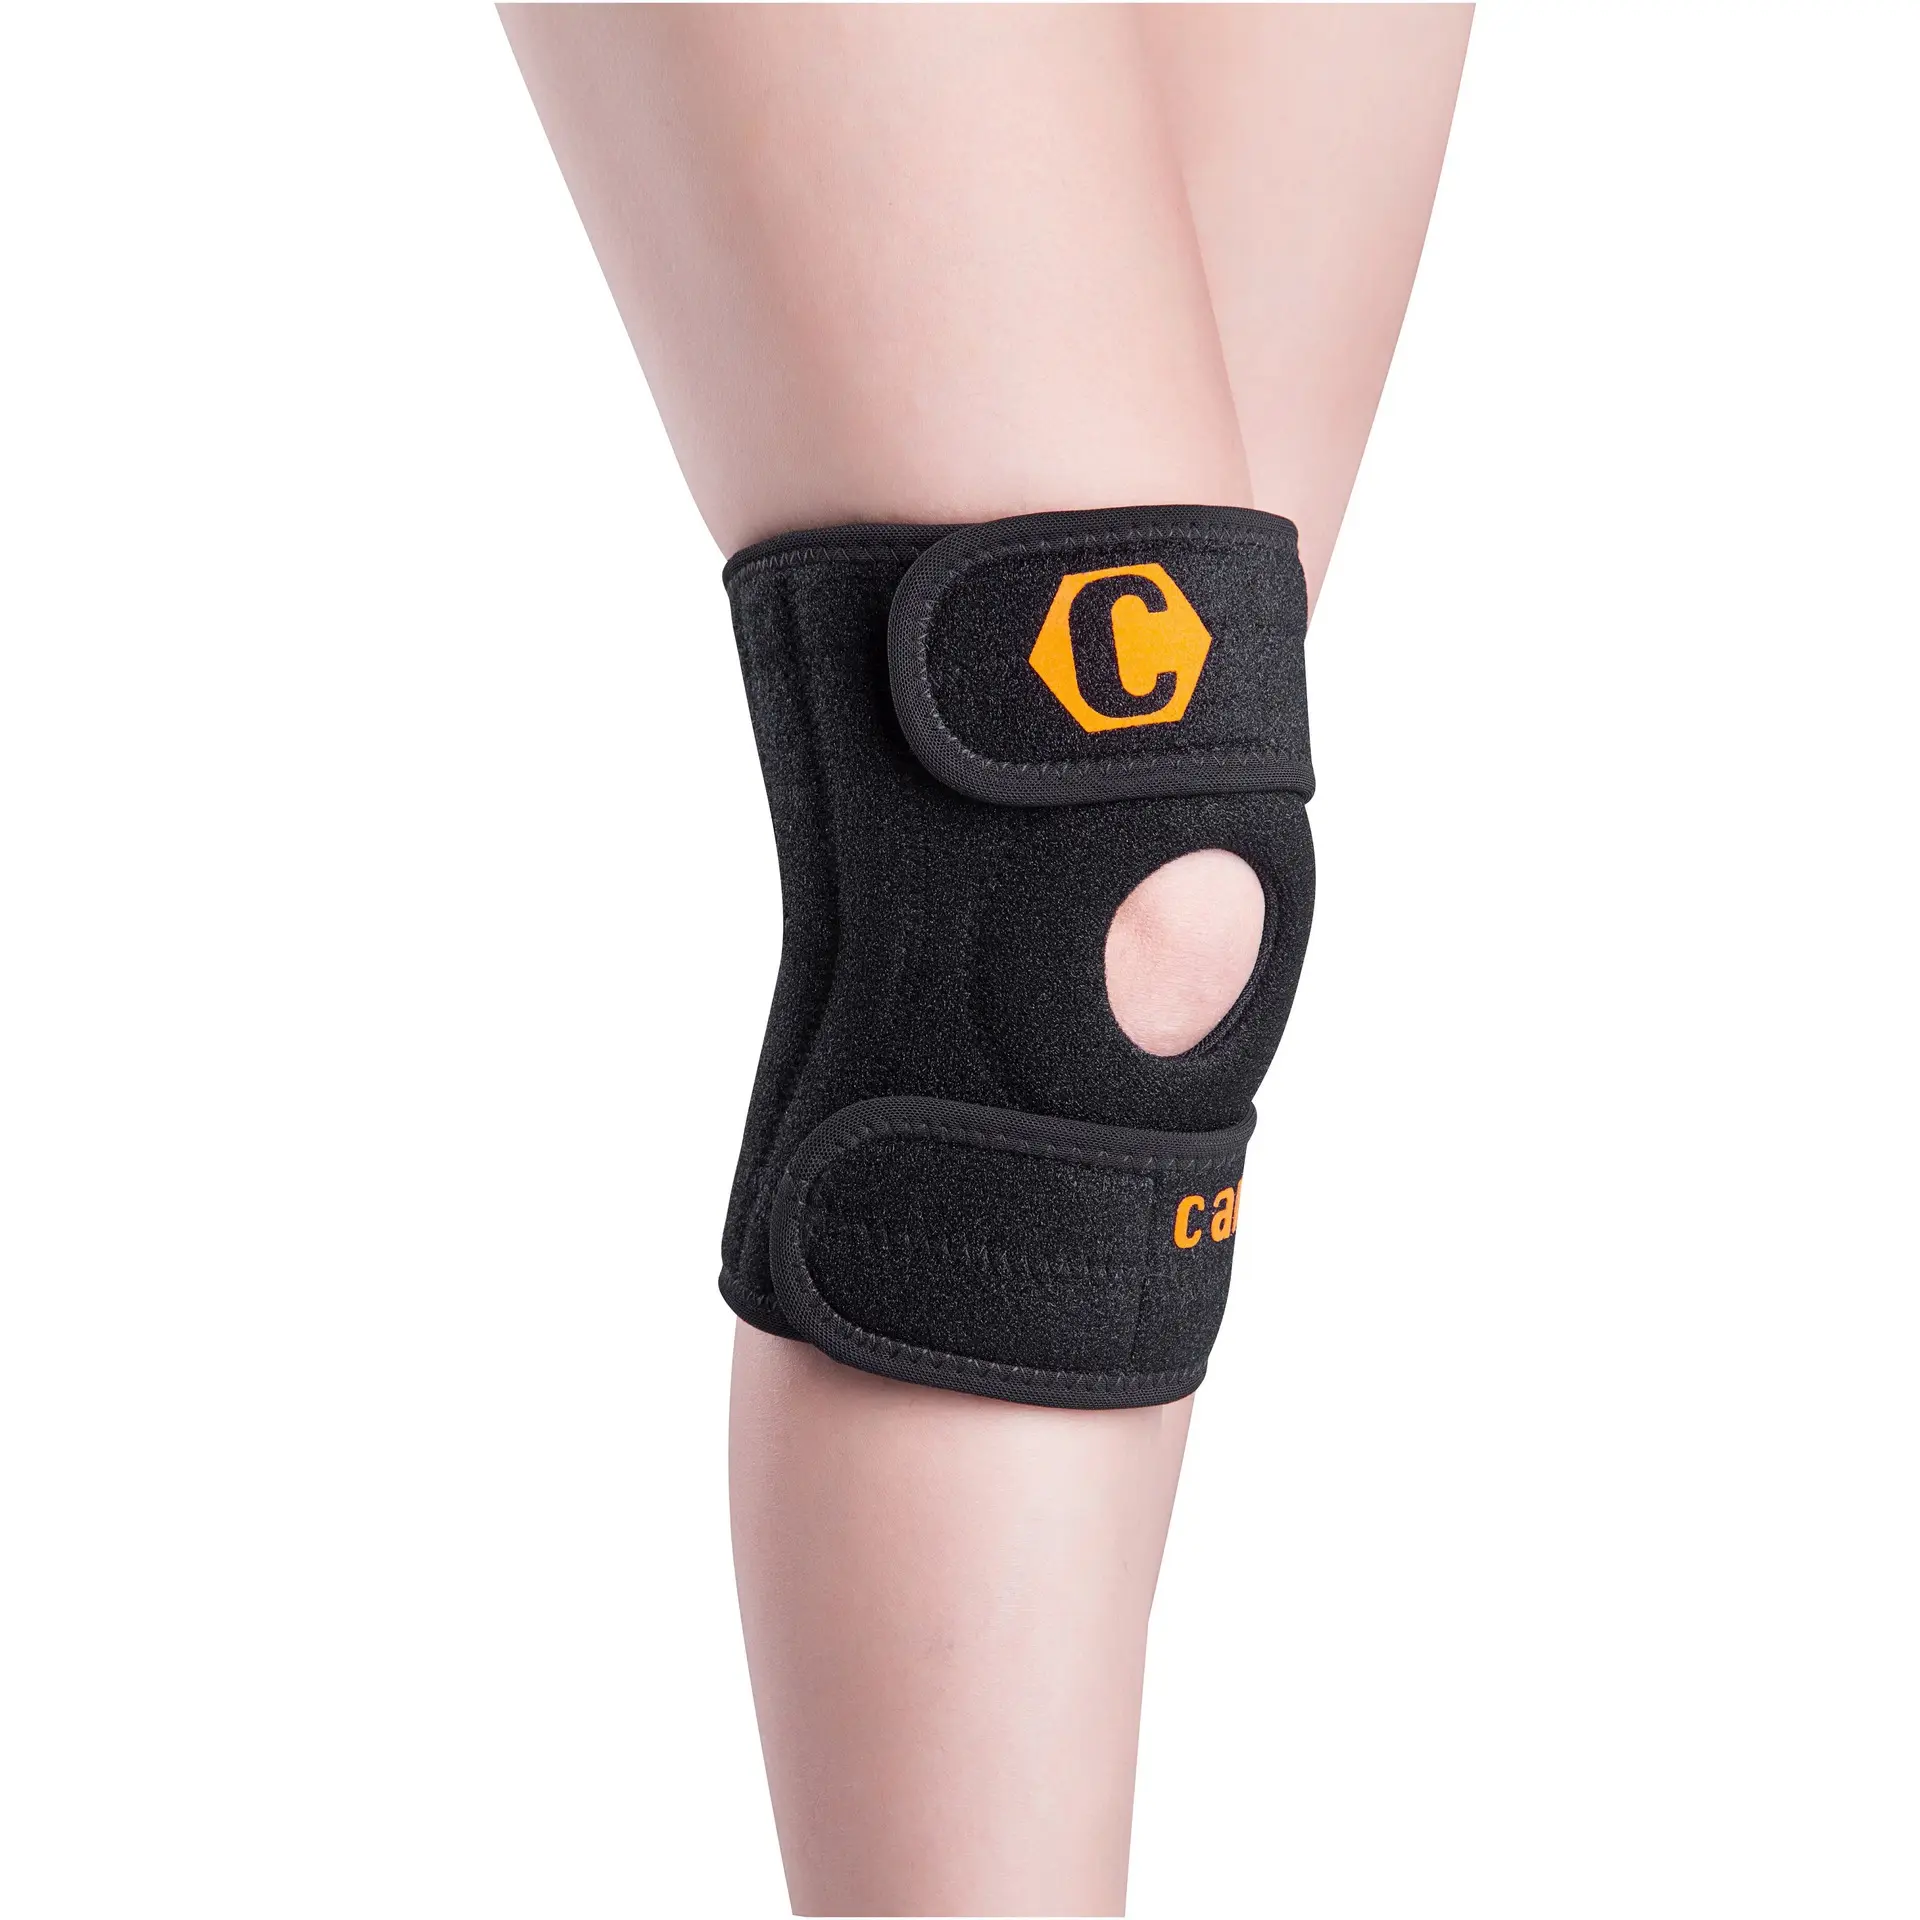 Hochwertiges, atmungsaktives Knie polster mit Knie kompression hülse für Männer und Frauen Knies tütze bei Arthritis-Schmerzen